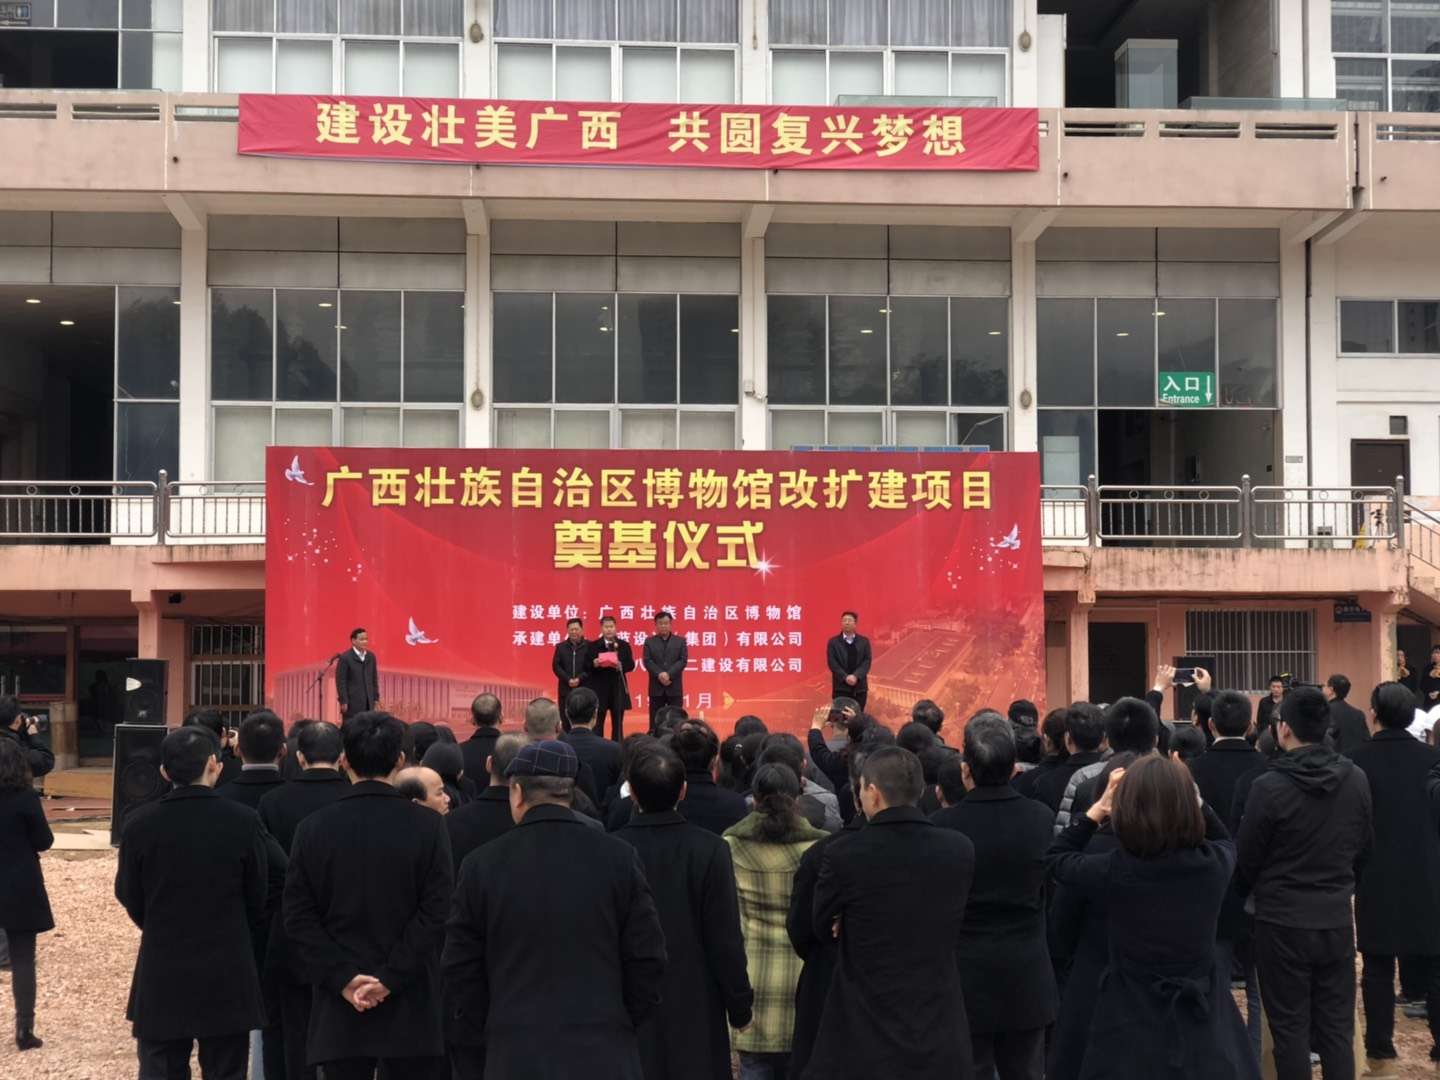 广西壮族自治区博物馆改扩建项目奠基仪式